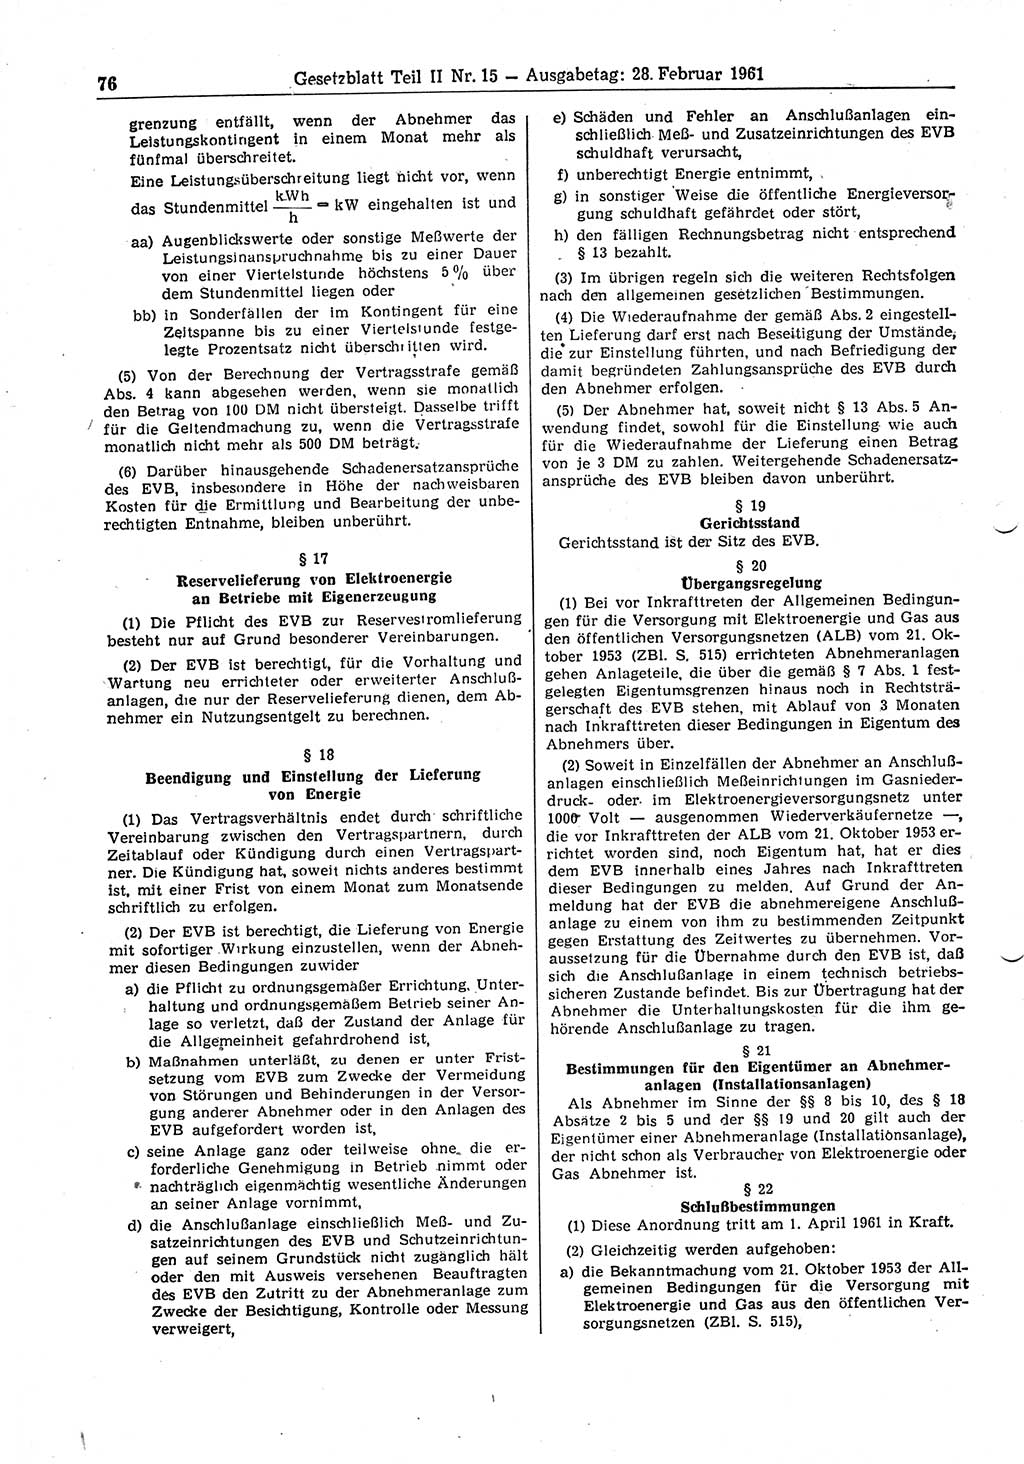 Gesetzblatt (GBl.) der Deutschen Demokratischen Republik (DDR) Teil ⅠⅠ 1961, Seite 76 (GBl. DDR ⅠⅠ 1961, S. 76)